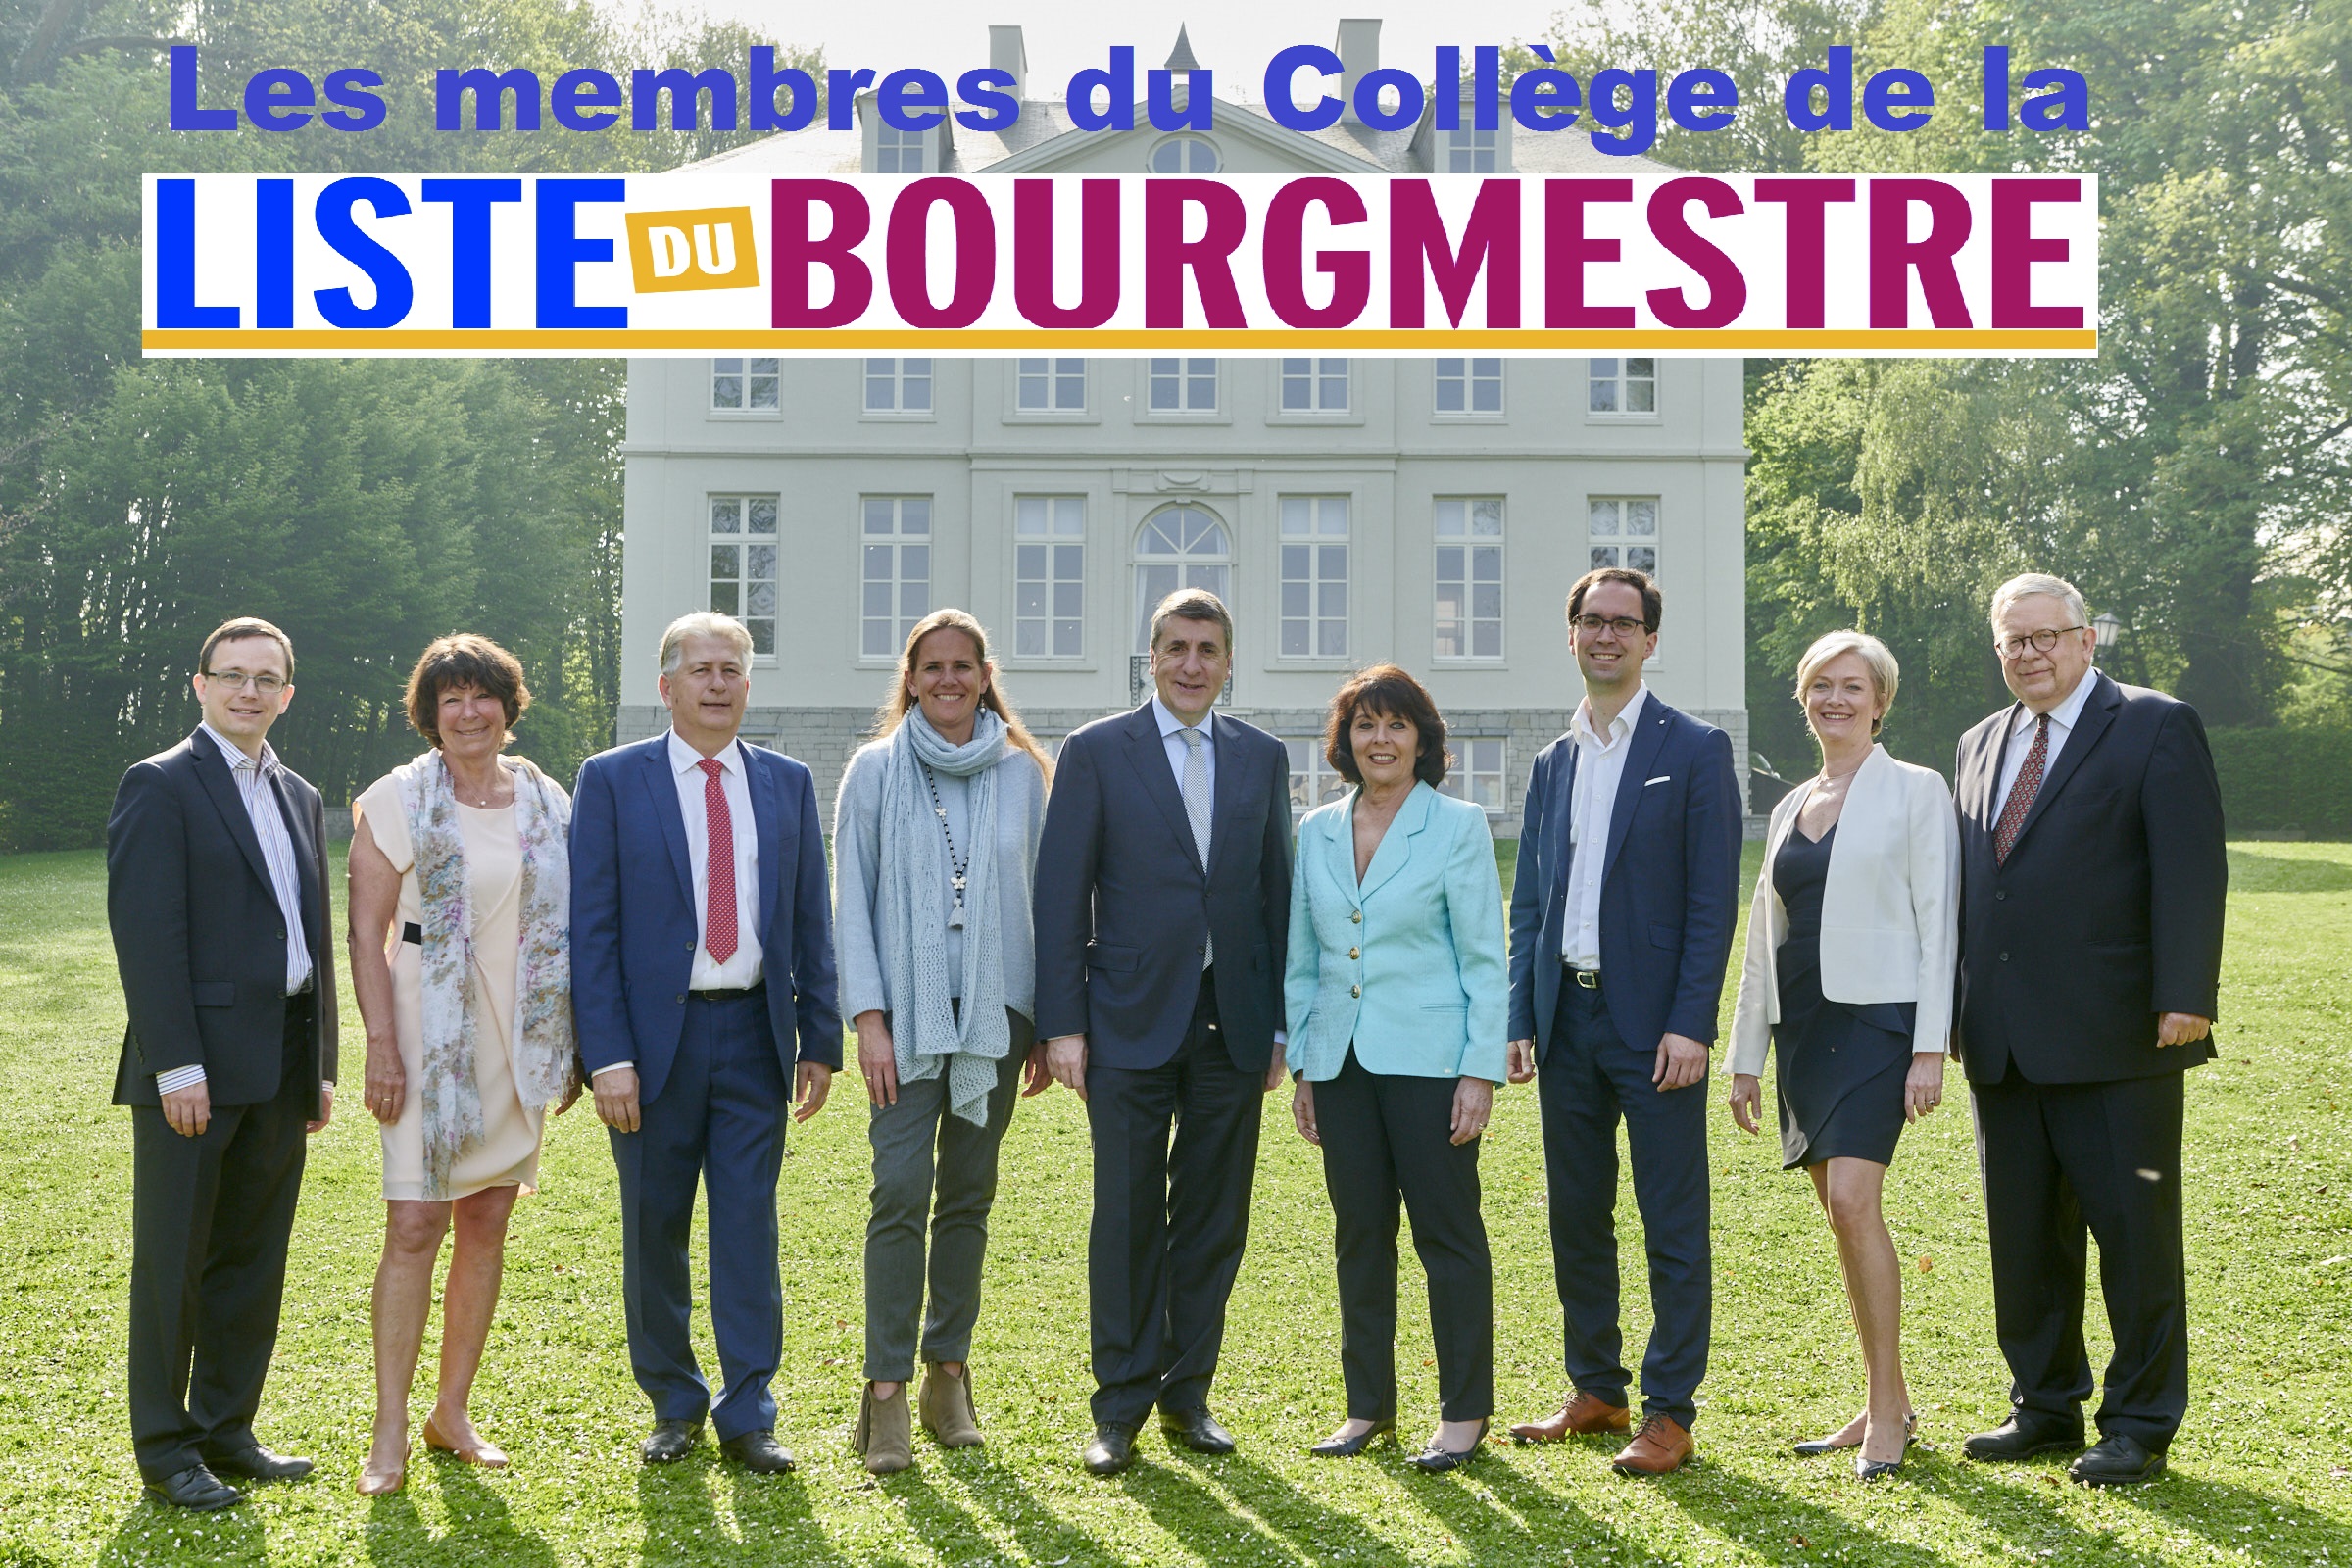 3_wol_st_lam_liste_du_bourgmestre-college_pt_-_bandeau.jpg